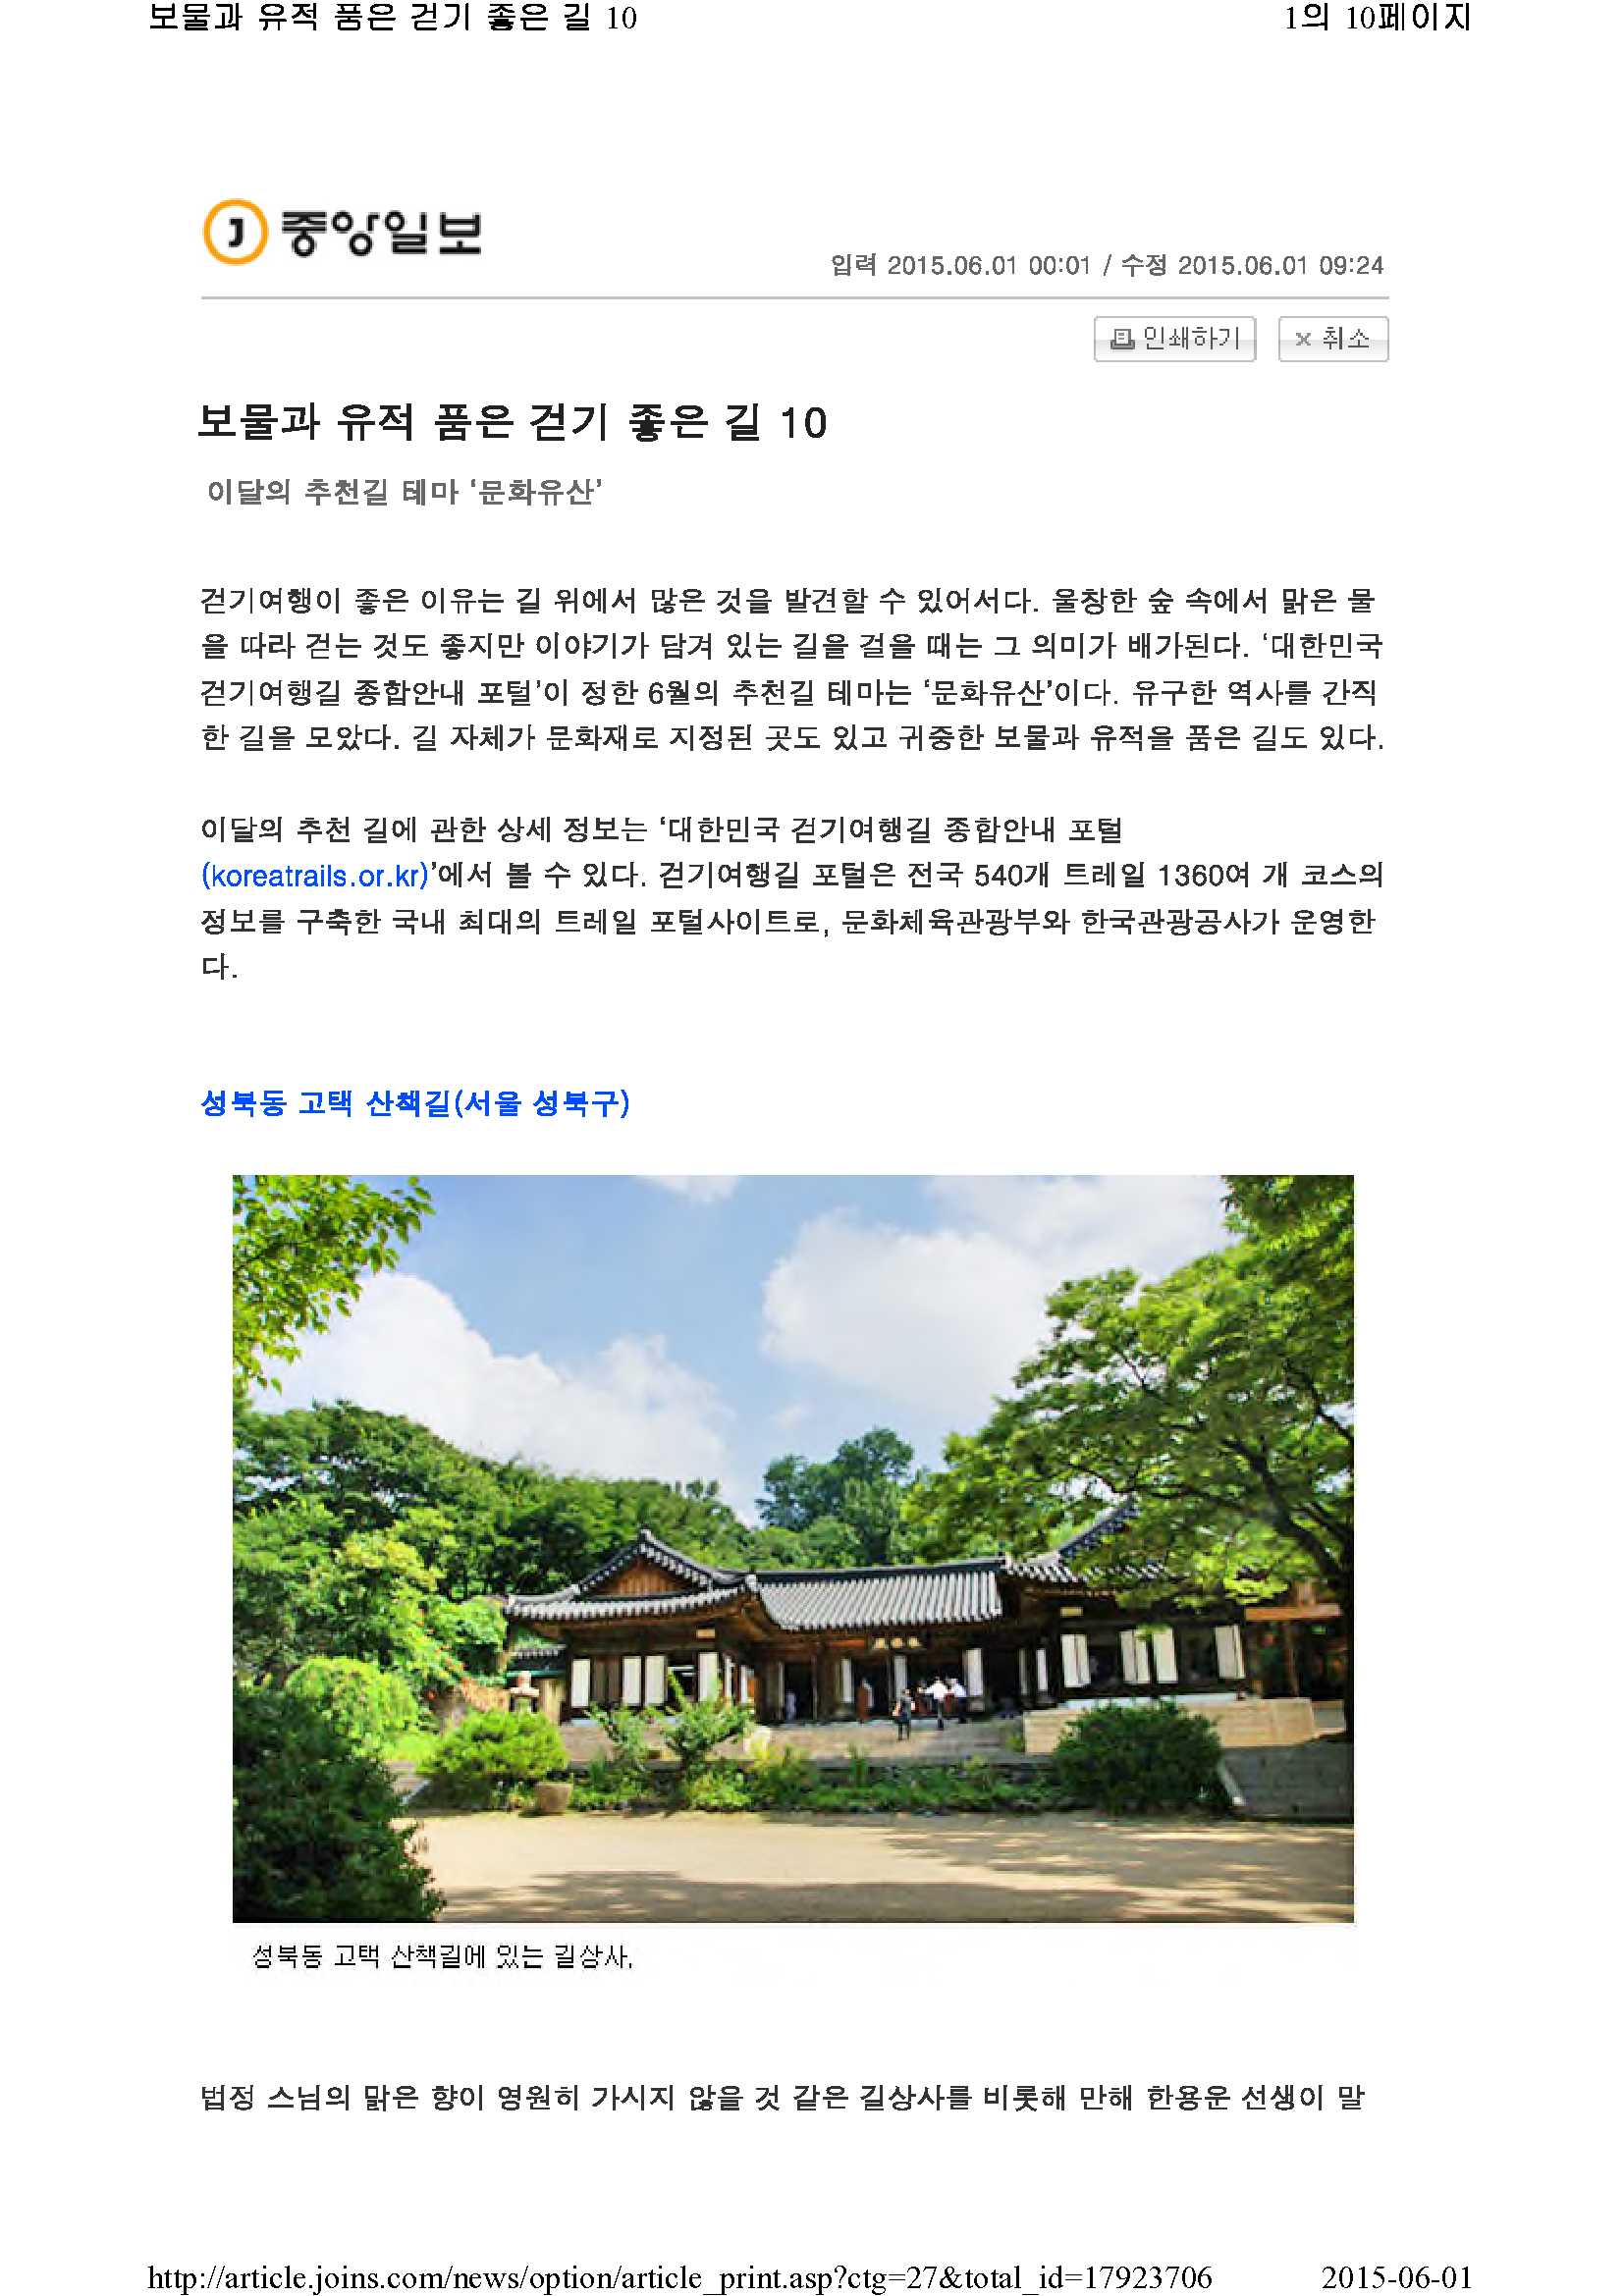 보물과 유적 품은 걷기 좋은 길 10(중앙일보)_1.jpg